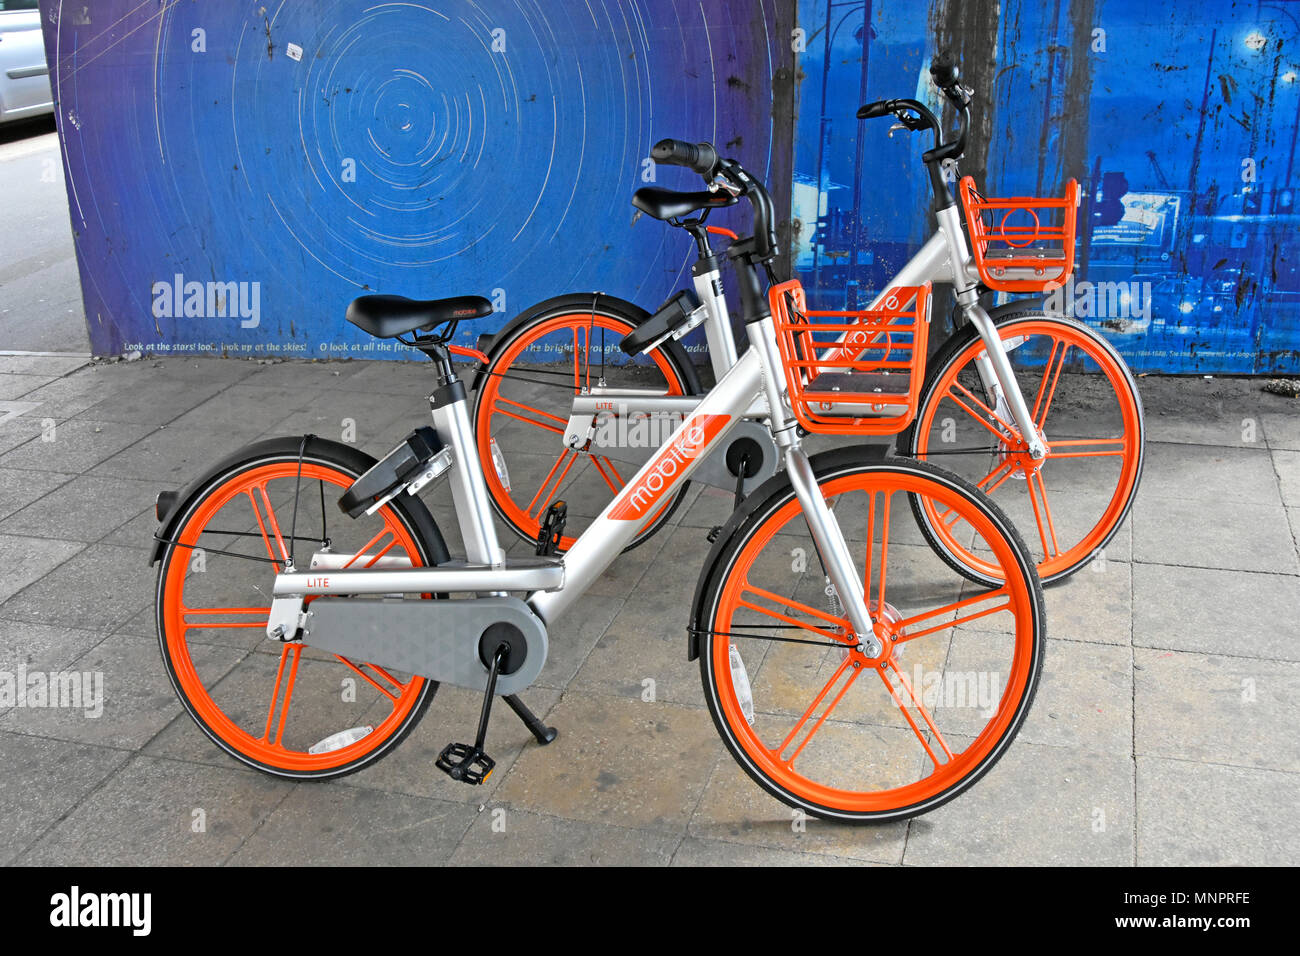 Smartphone App betrieben dockless Mobike Lite bike mieten ab China Fahrrad Vermietung business random Parkplatz warten auf Wiederverwendung Stratford London Großbritannien Stockfoto